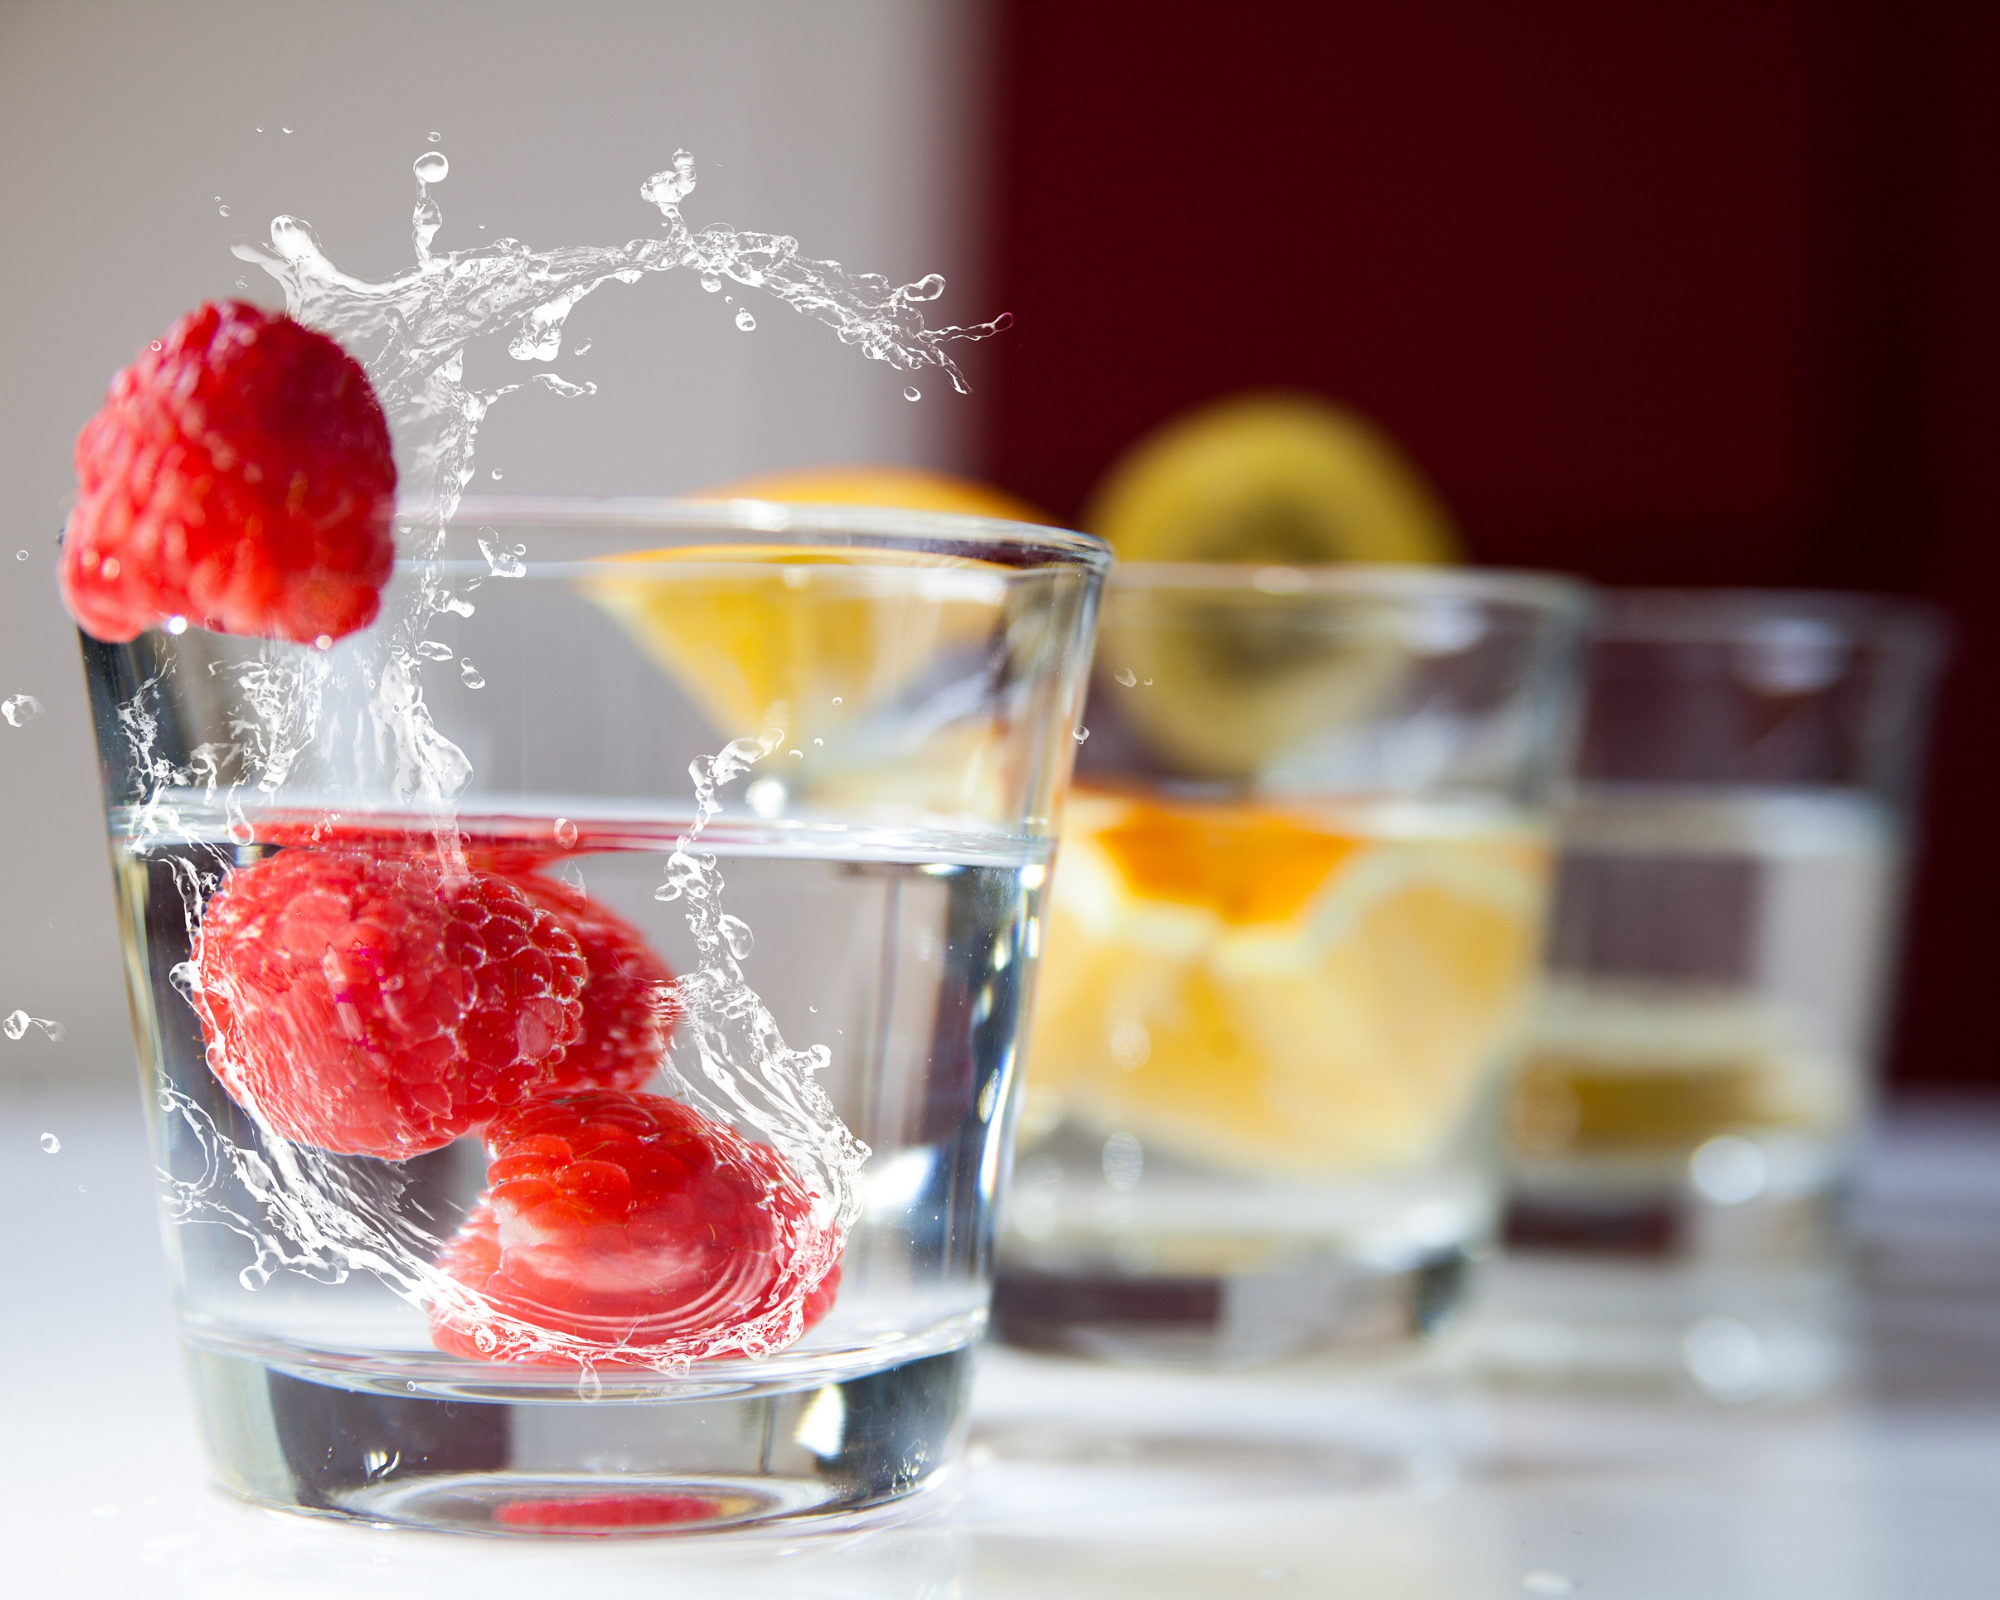 Imagen destacada de “Beba más inteligentemente, viva mejor: su guía para opciones de bebidas más saludables”